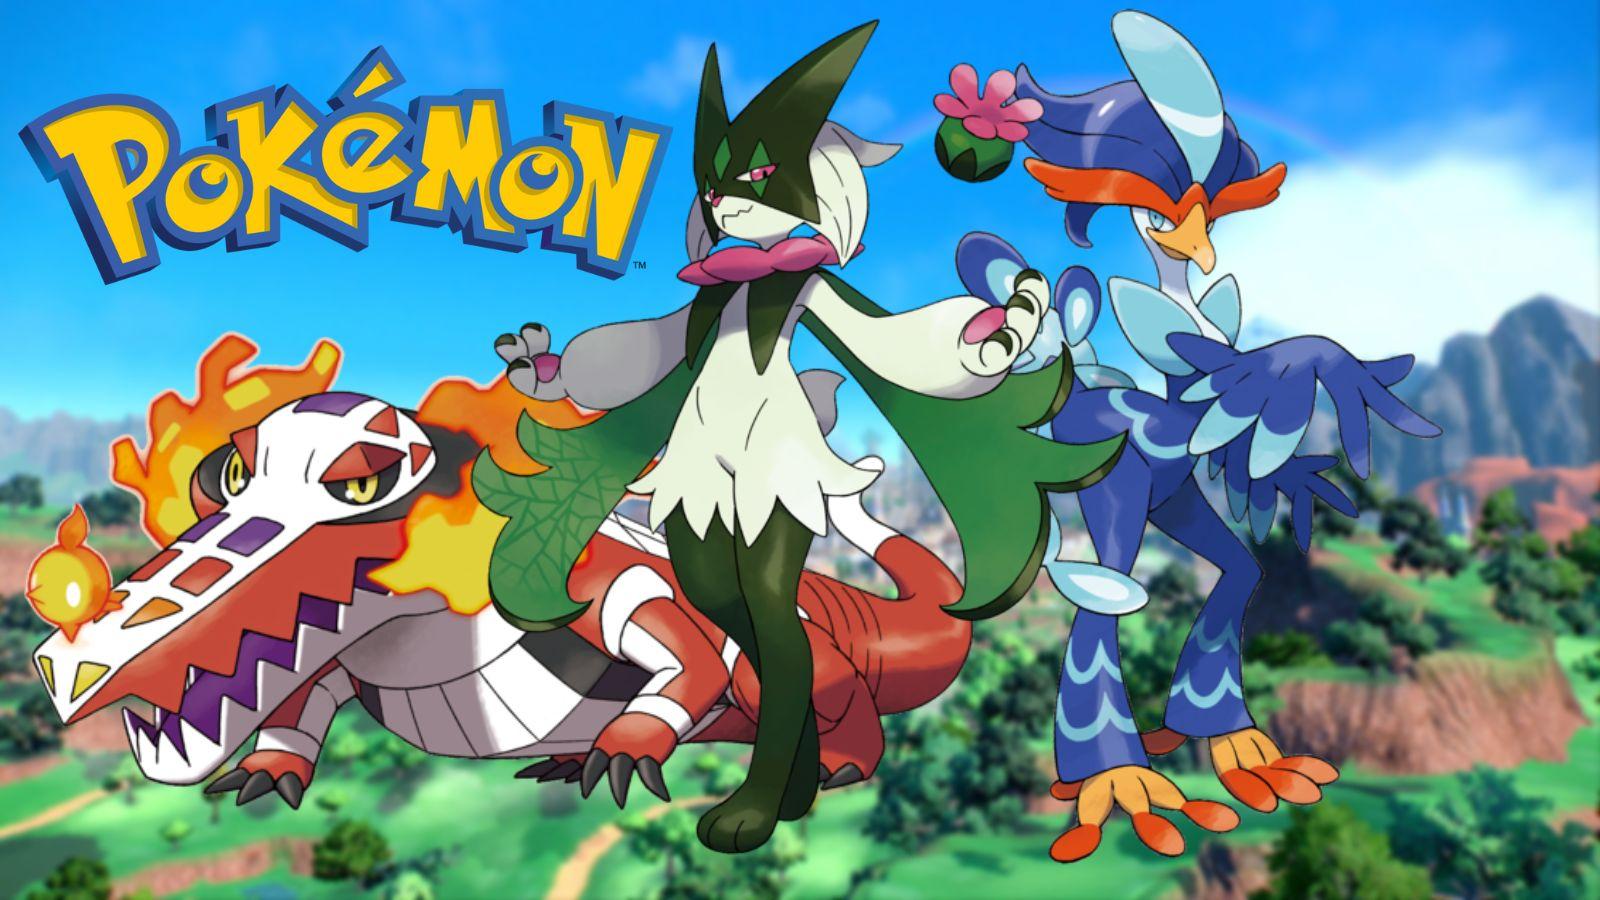 The 'Pokémon Scarlet And Violet' Starter Evolutions Have